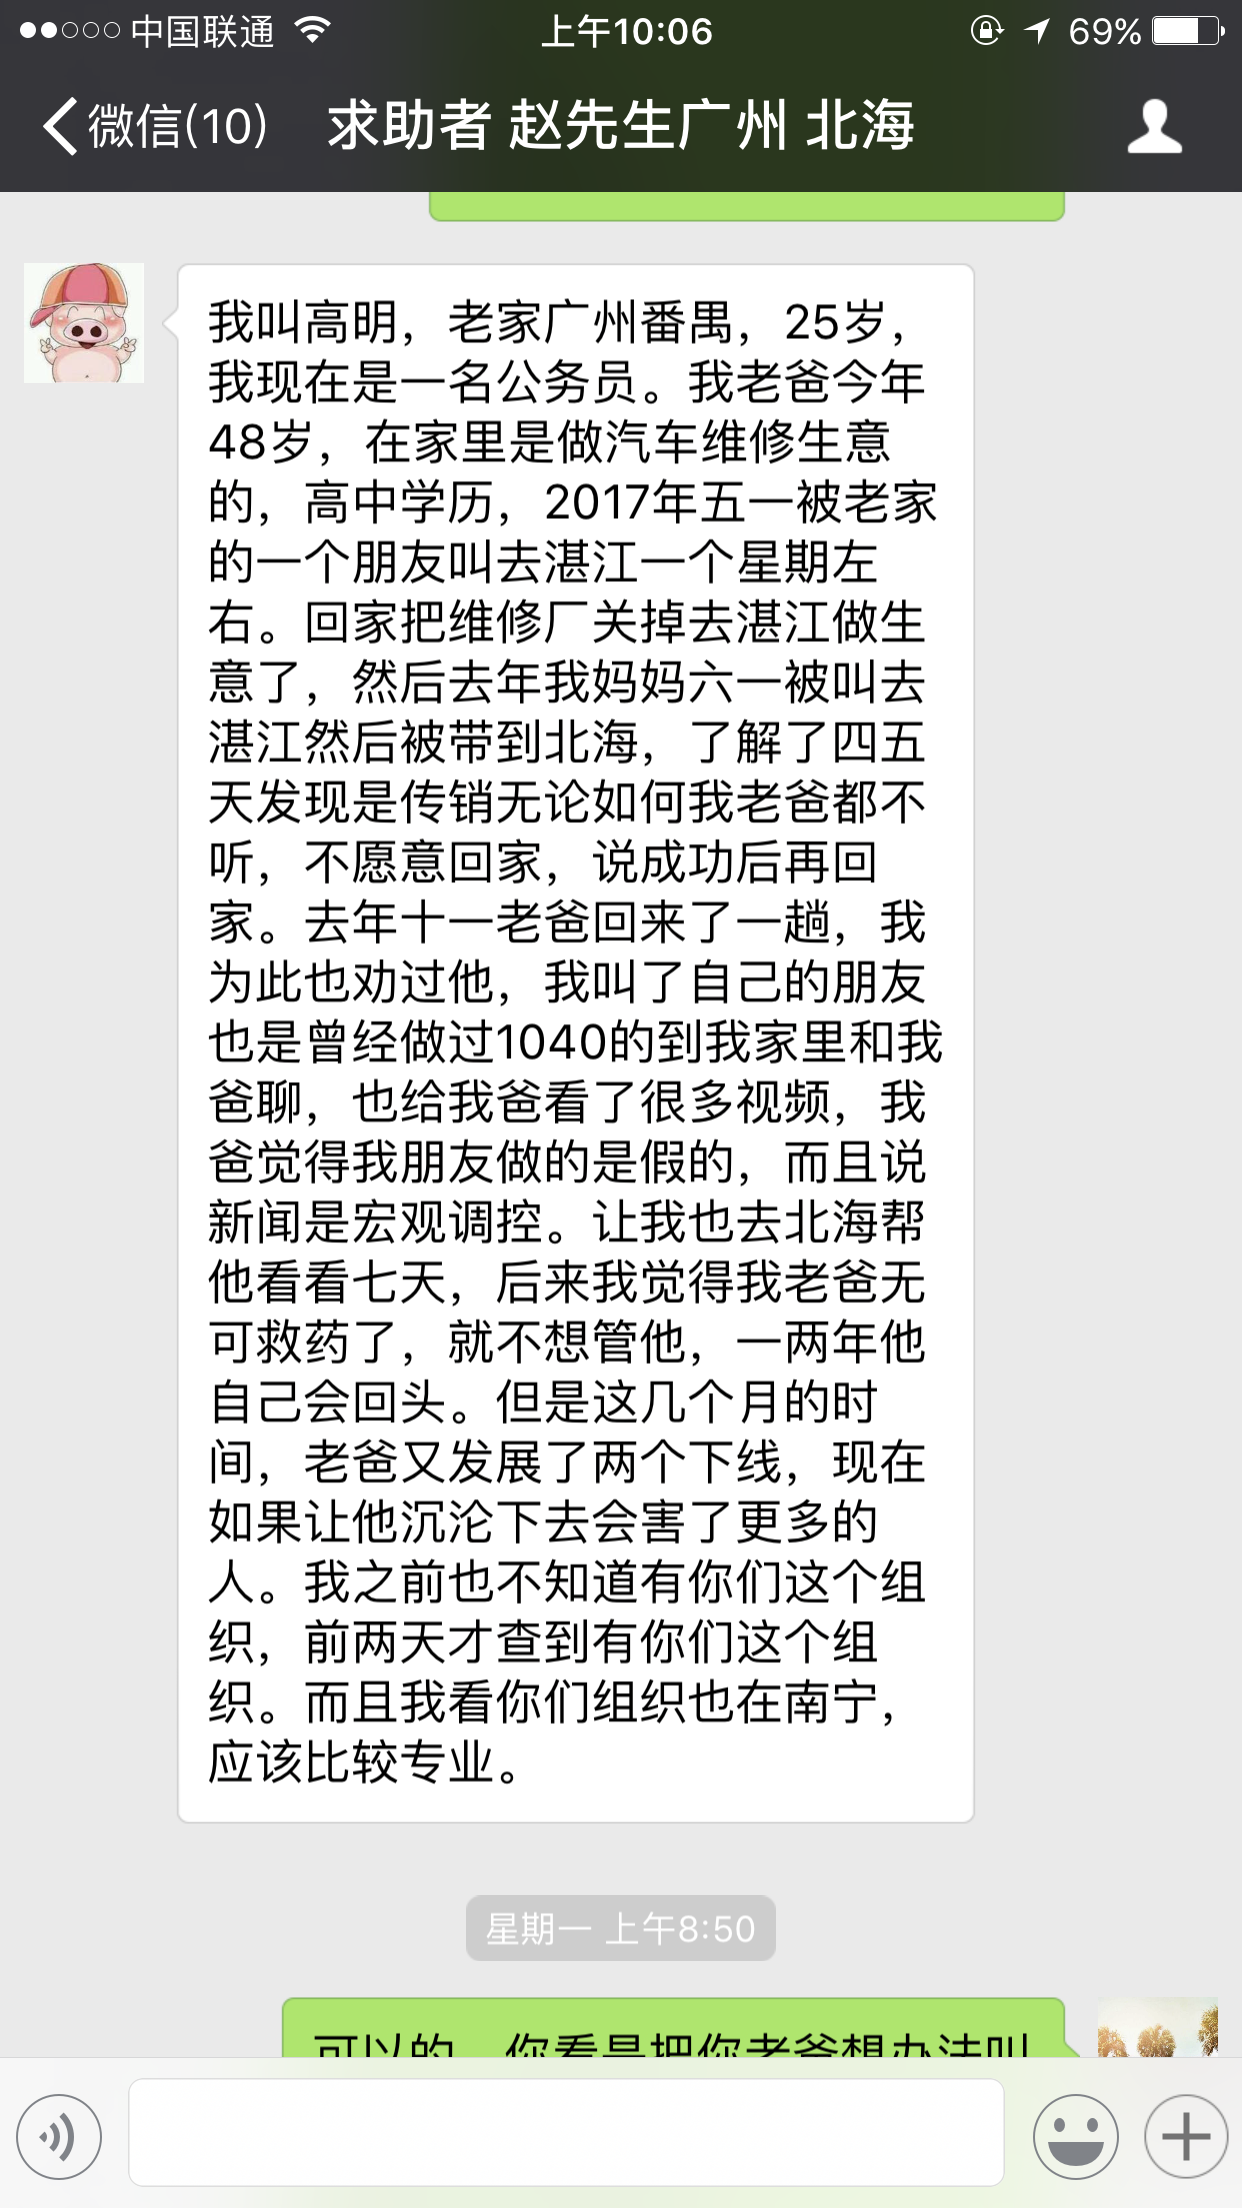 反传销帮帮网黄老师北海现场成功解救劝醒广州资本运作受害者(图3)